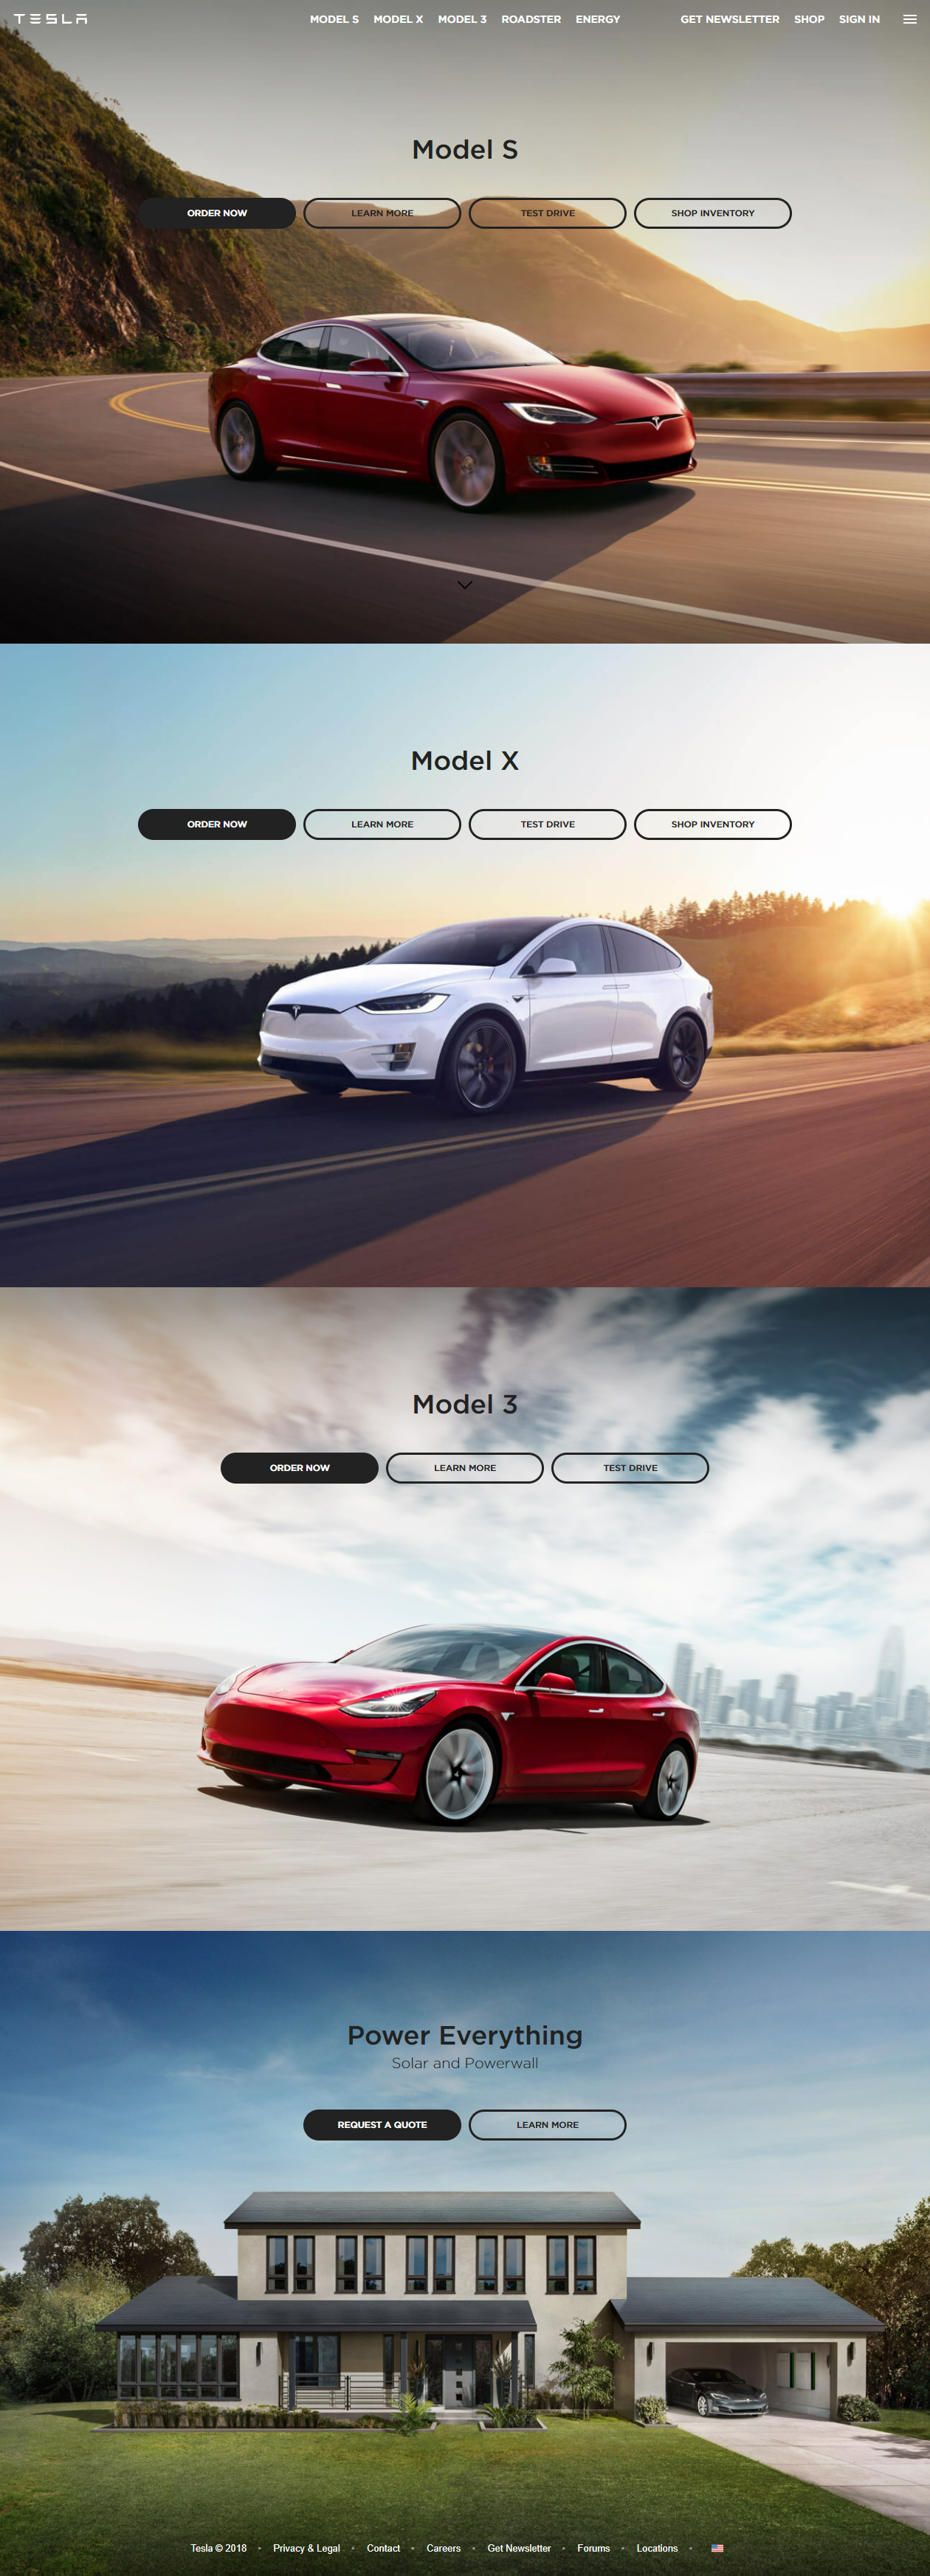 Tesla in 2018